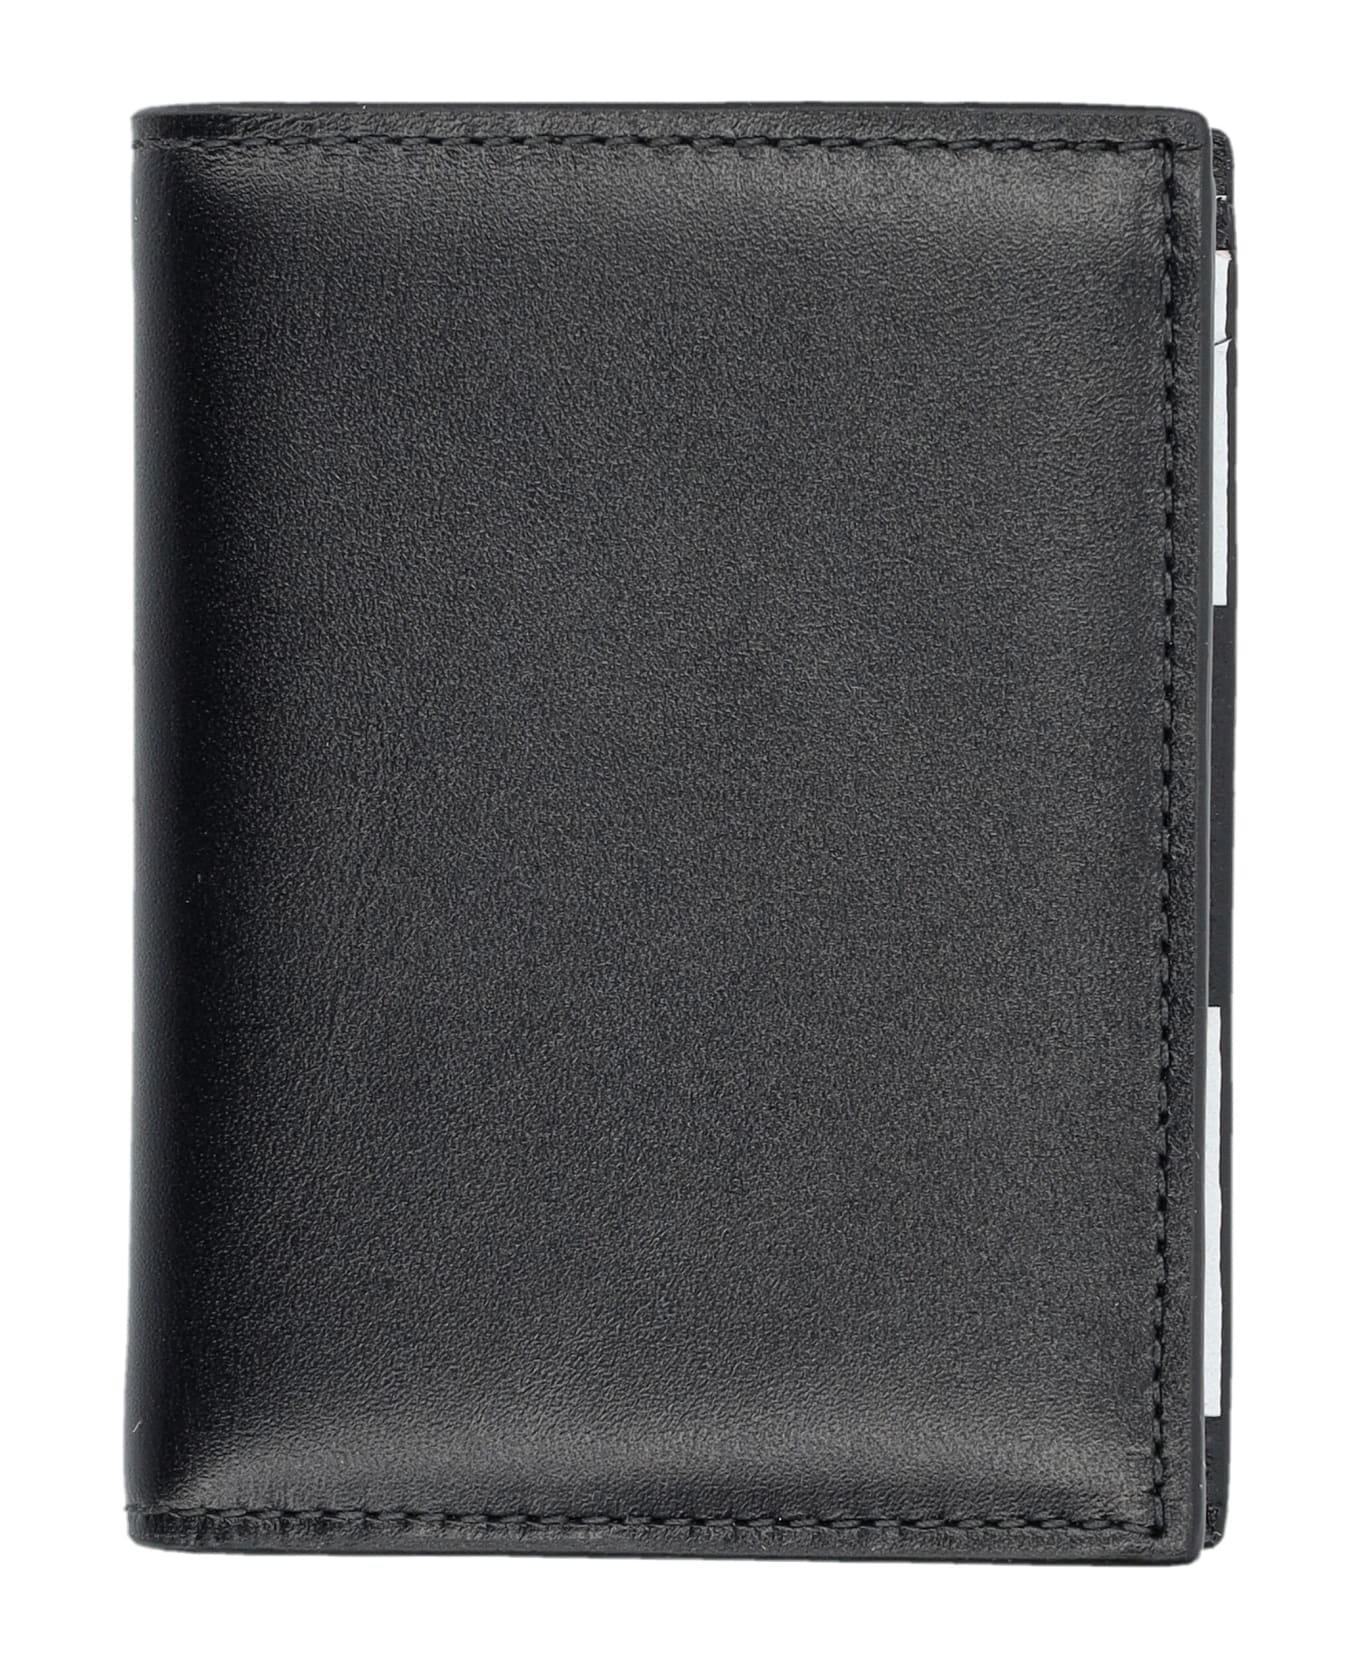 Comme des Garçons Wallet Classic Print Cardholder - CHECK PRINT 財布